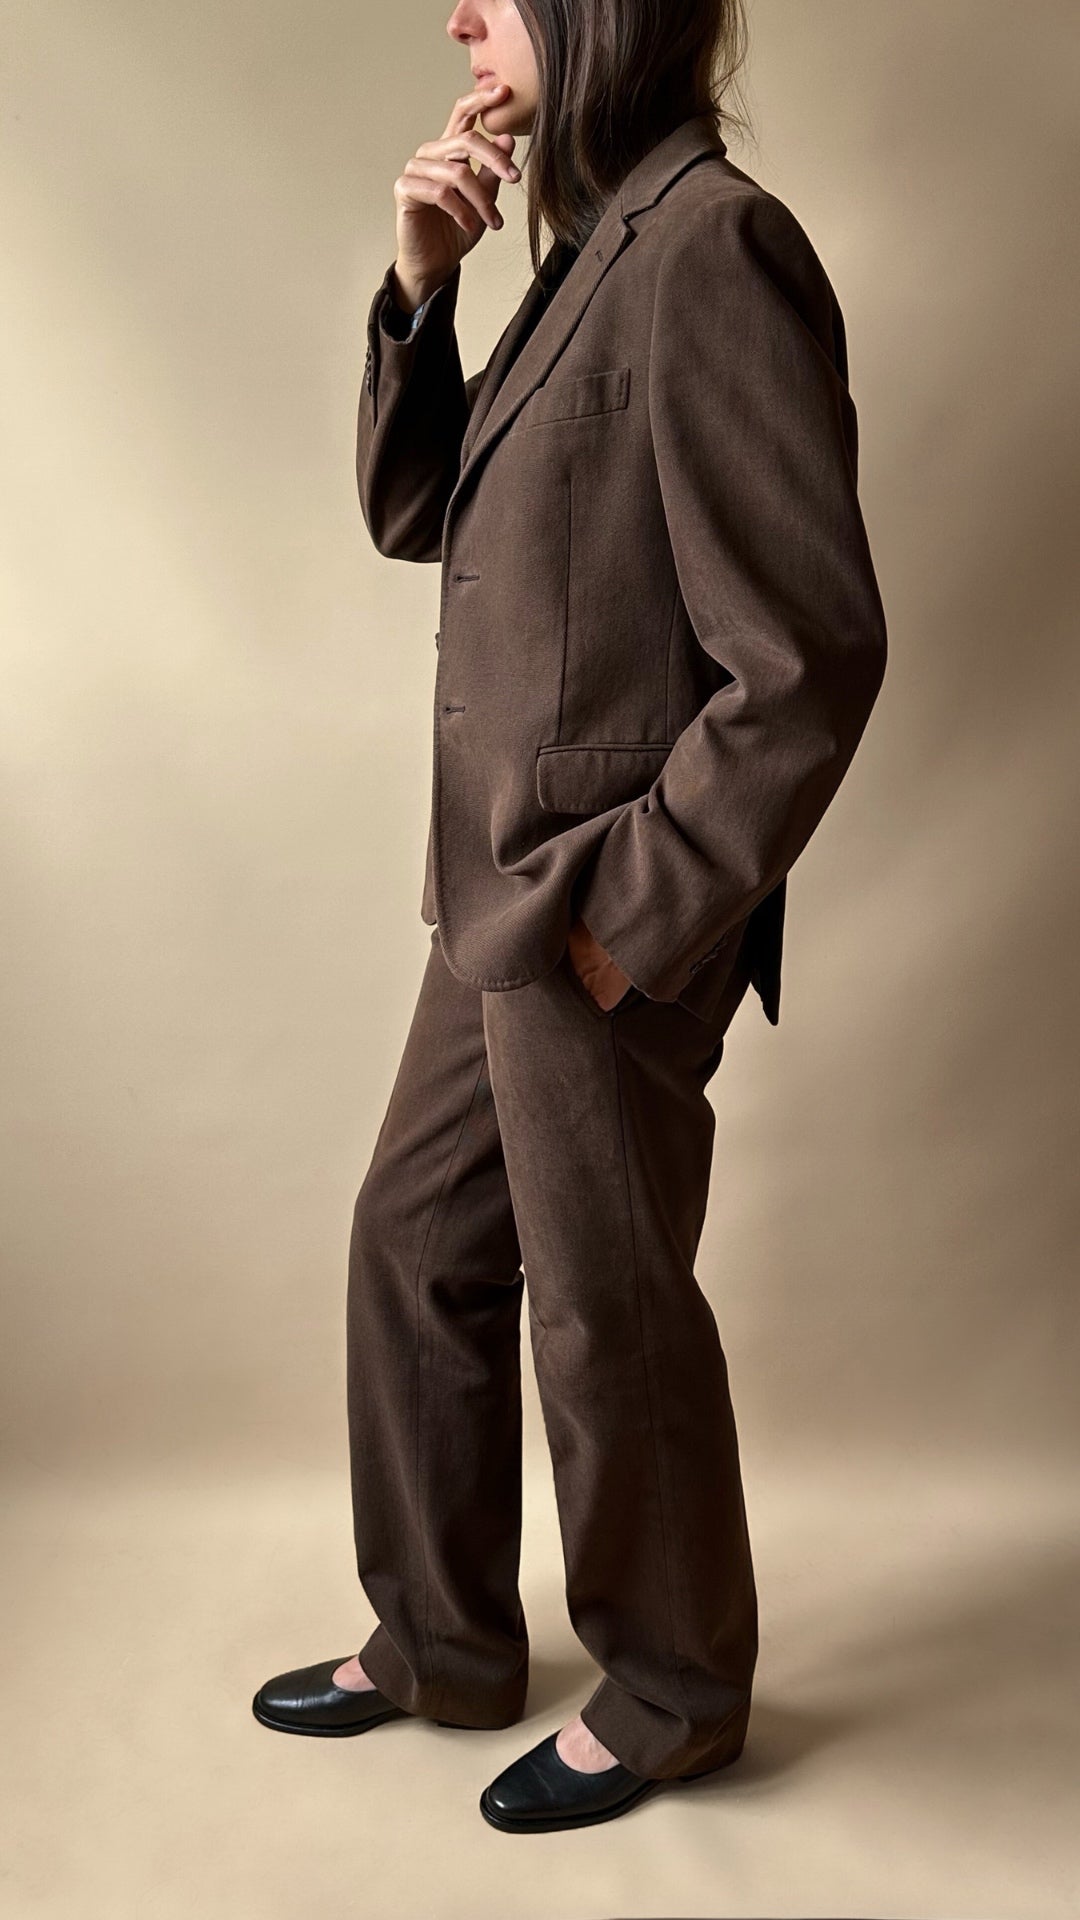 Moschino Brown Blazer Suit